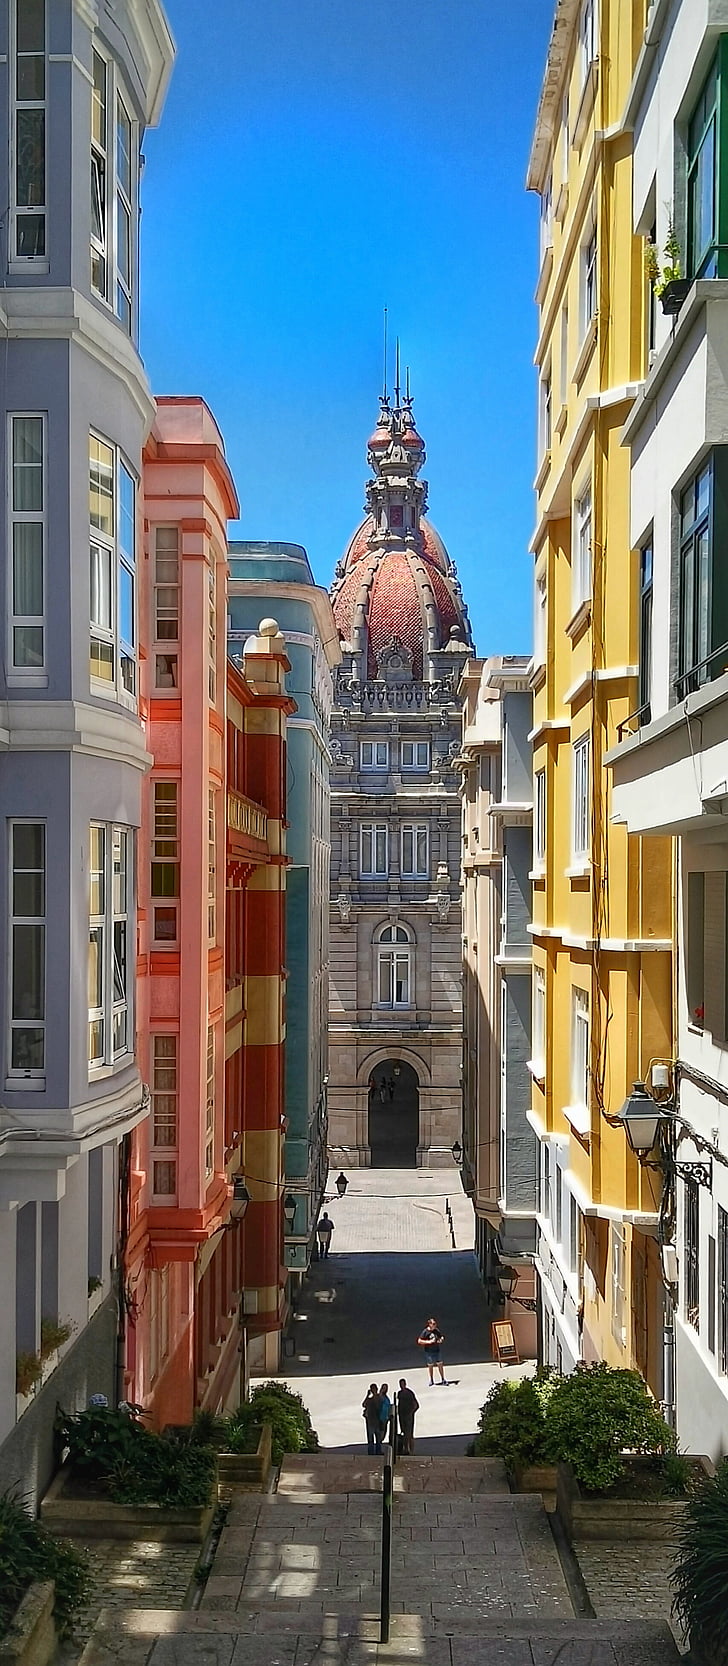 Coruña, Španělsko, ar, Architektura, kamenické práce, cestování